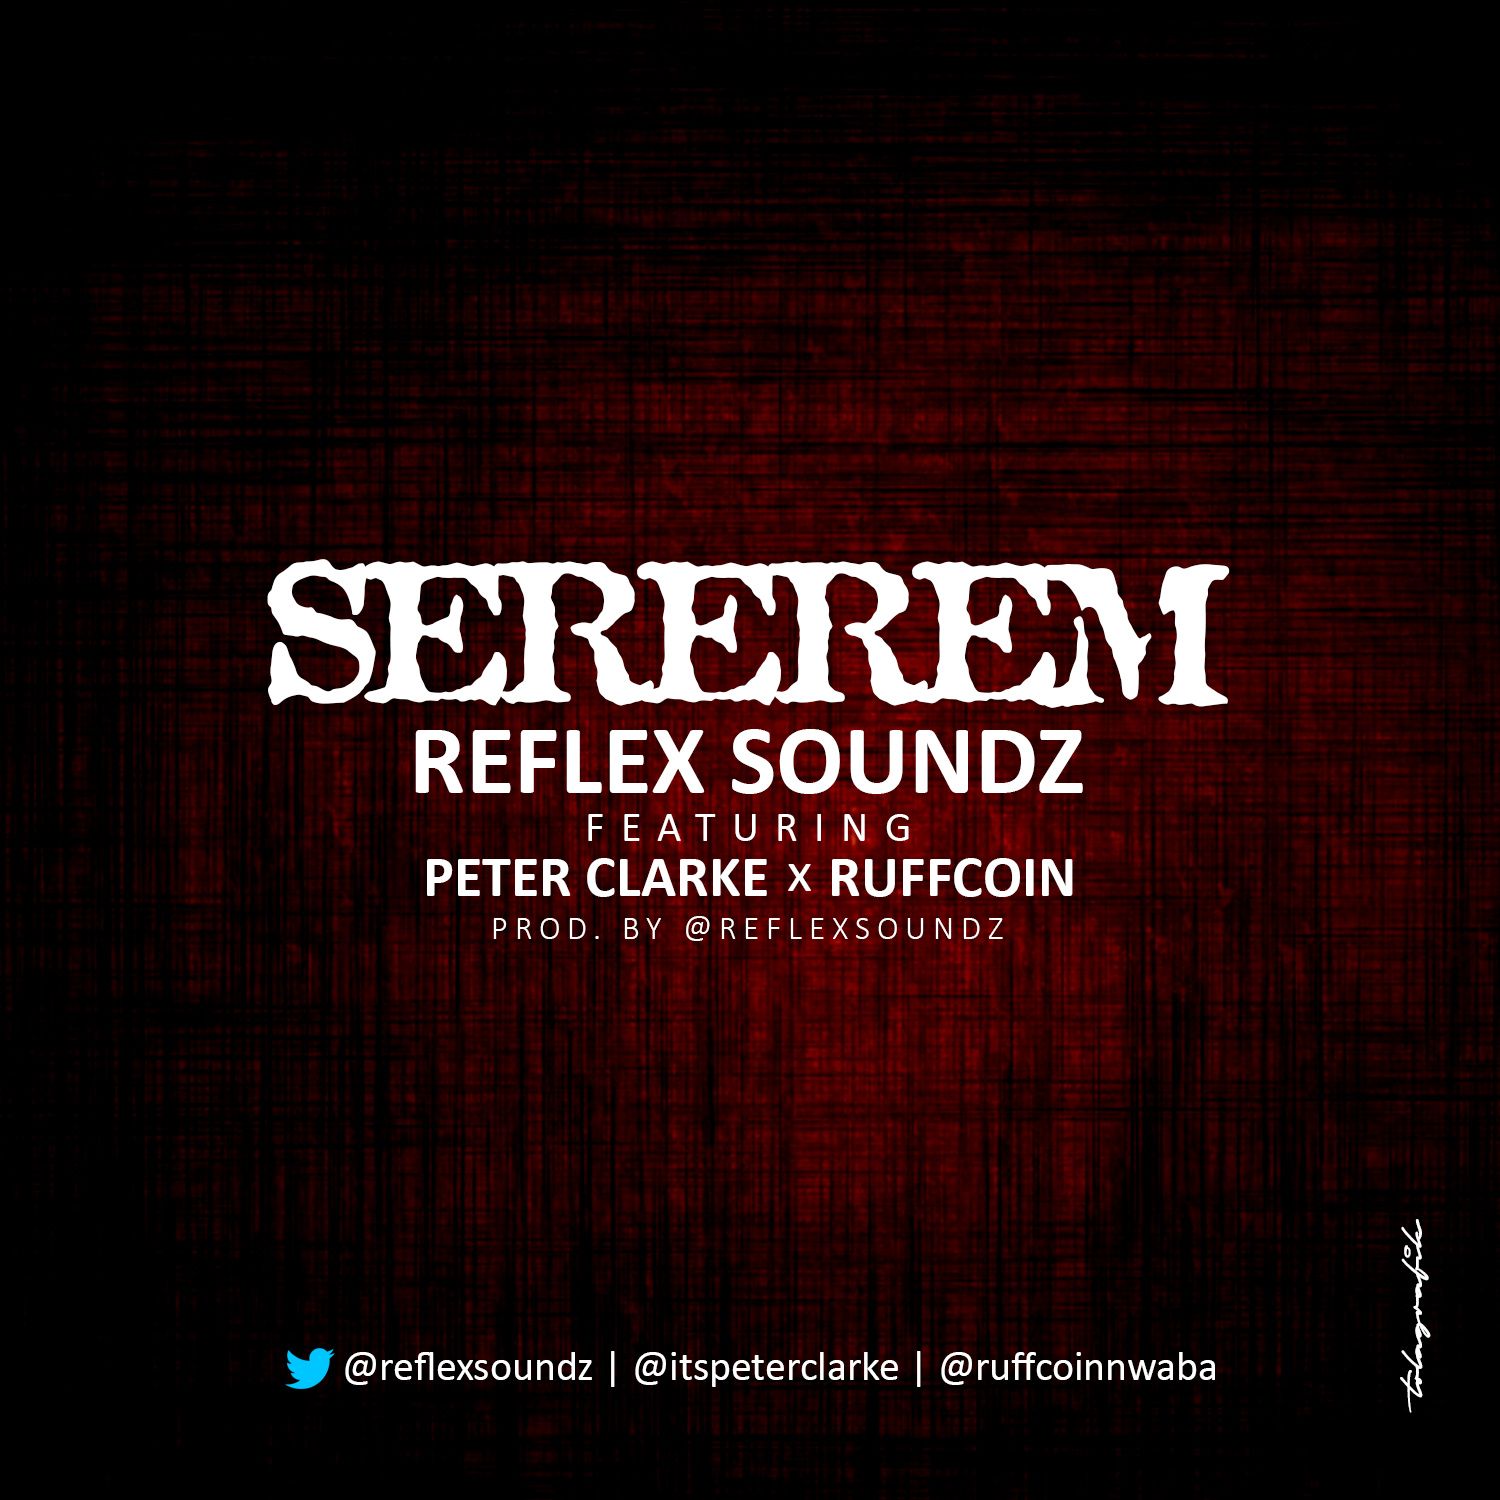 Reflex Soundz ft. Peter Clarke & Ruffcoin - SEREREM Artwork | AceWorldTeam.com